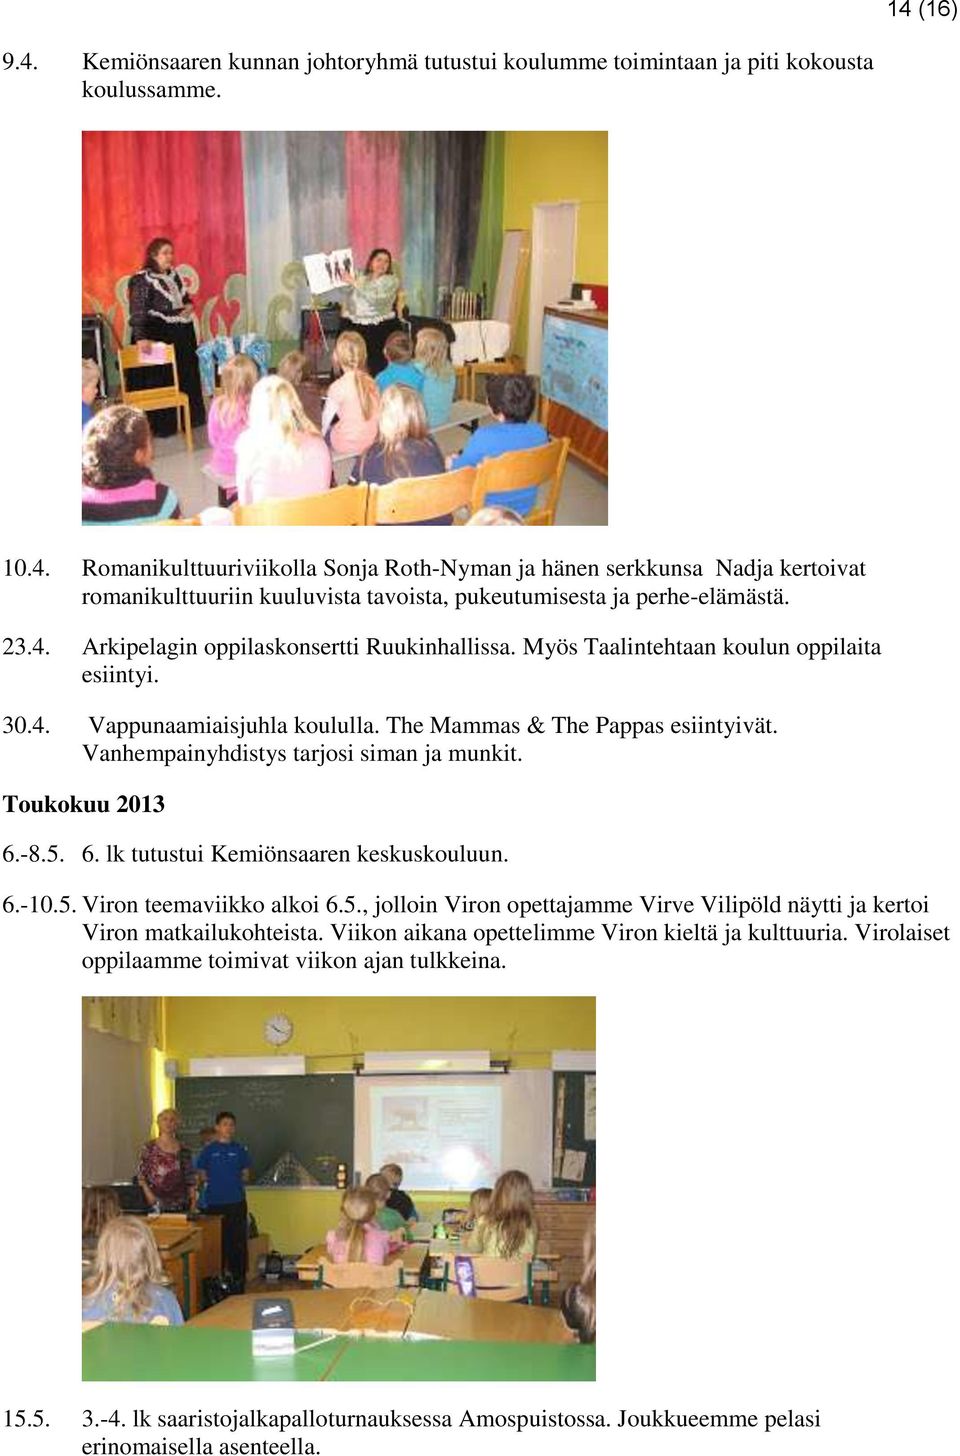 Vanhempainyhdistys tarjosi siman ja munkit. Toukokuu 2013 6.-8.5. 6. lk tutustui Kemiönsaaren keskuskouluun. 6.-10.5. Viron teemaviikko alkoi 6.5., jolloin Viron opettajamme Virve Vilipöld näytti ja kertoi Viron matkailukohteista.